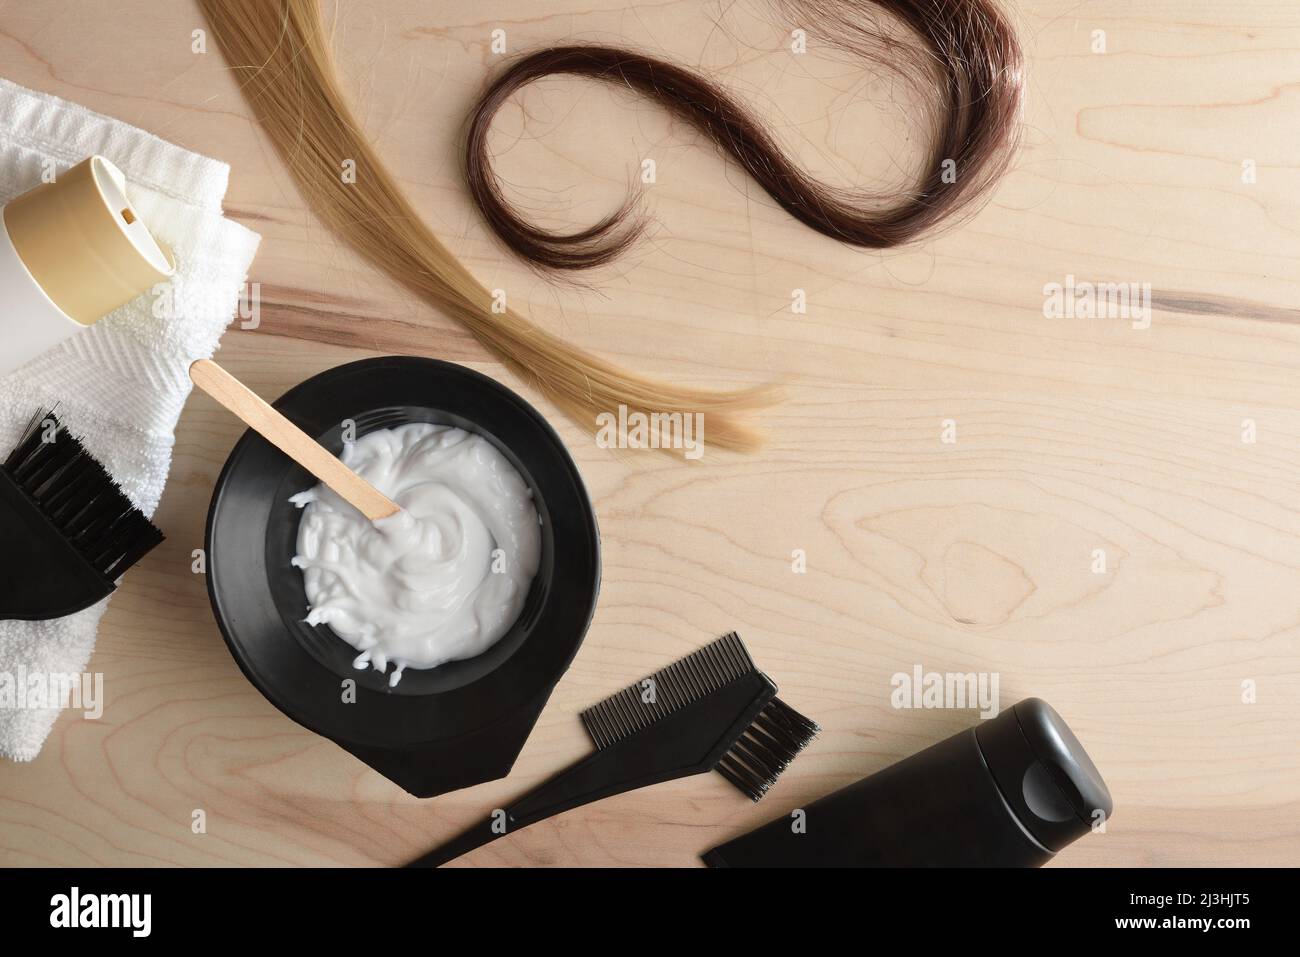 Trattamento di prodotti per la cura dei capelli e la colorazione da un salone stilista su tavola di legno. Vista dall'alto. Composizione orizzontale. Foto Stock